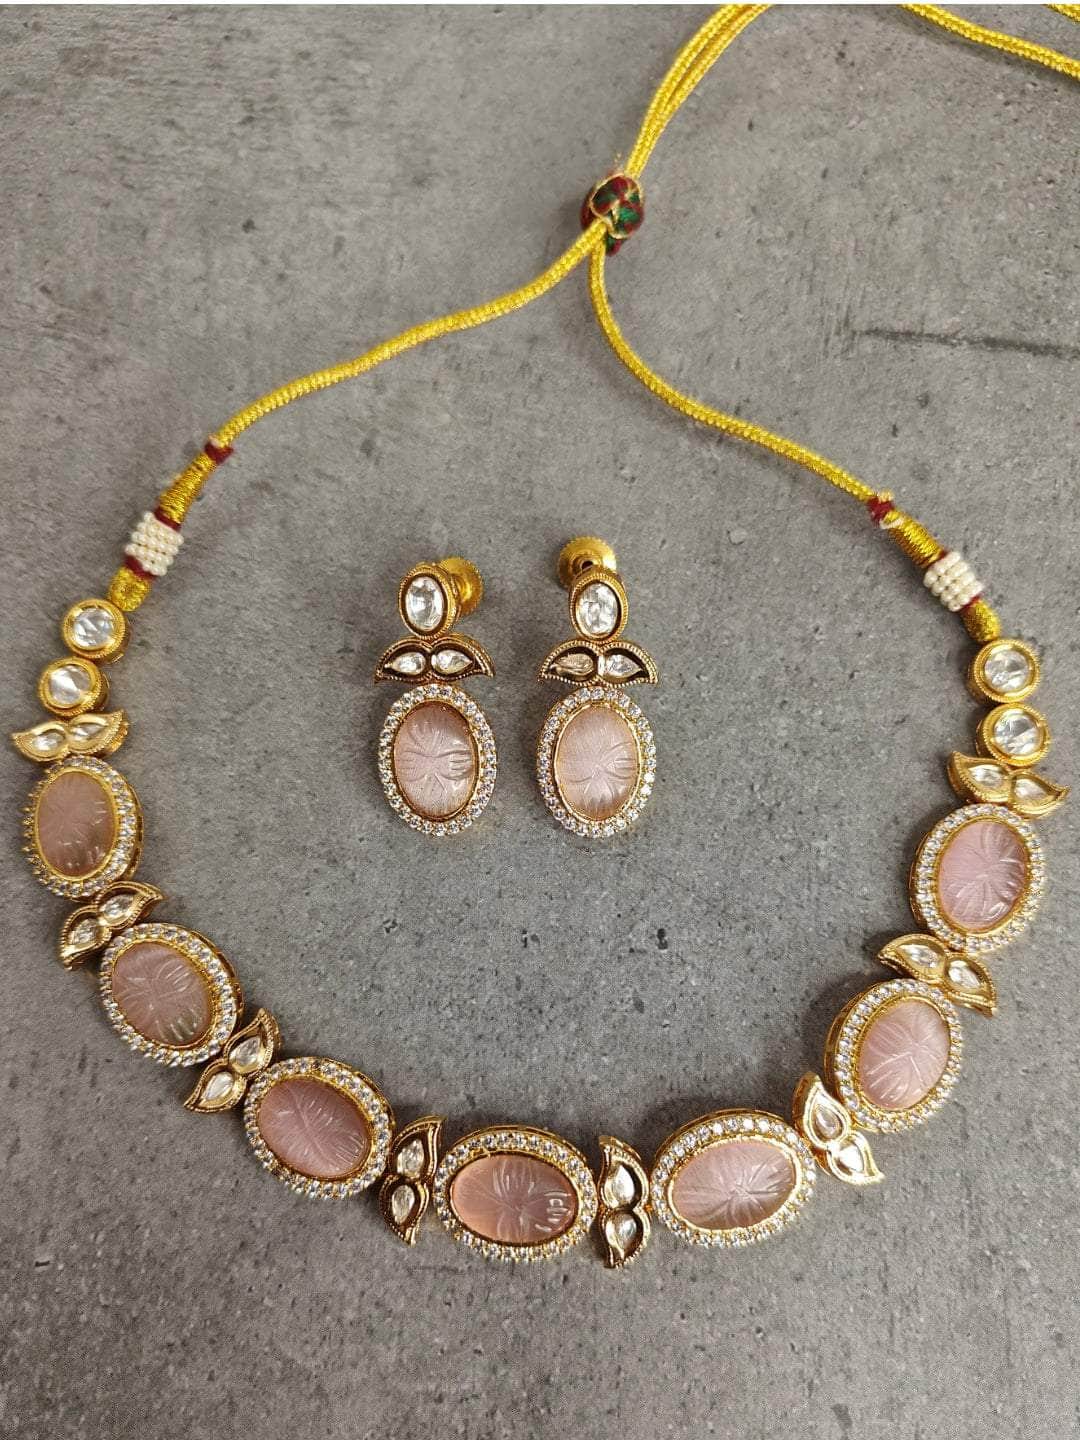 Ishhaara AD stone gorgeous choker necklace set